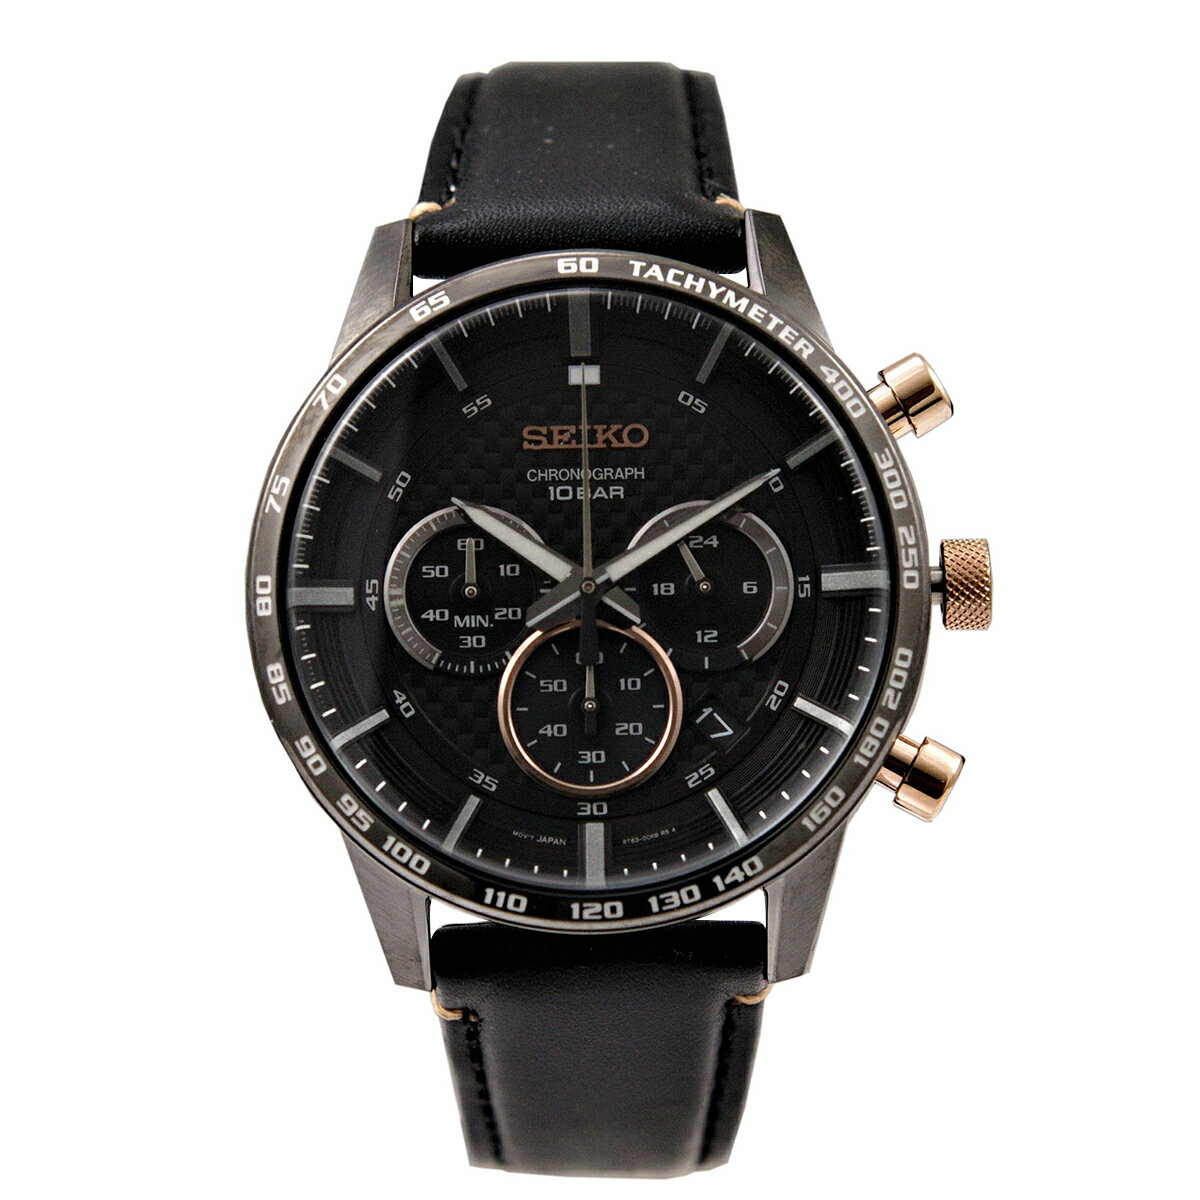 セイコー SEIKO 腕時計 クオーツ クロノグラフ 100M防水 ブラック文字盤 海外モデル SSB361P1 メンズ [逆輸入品]